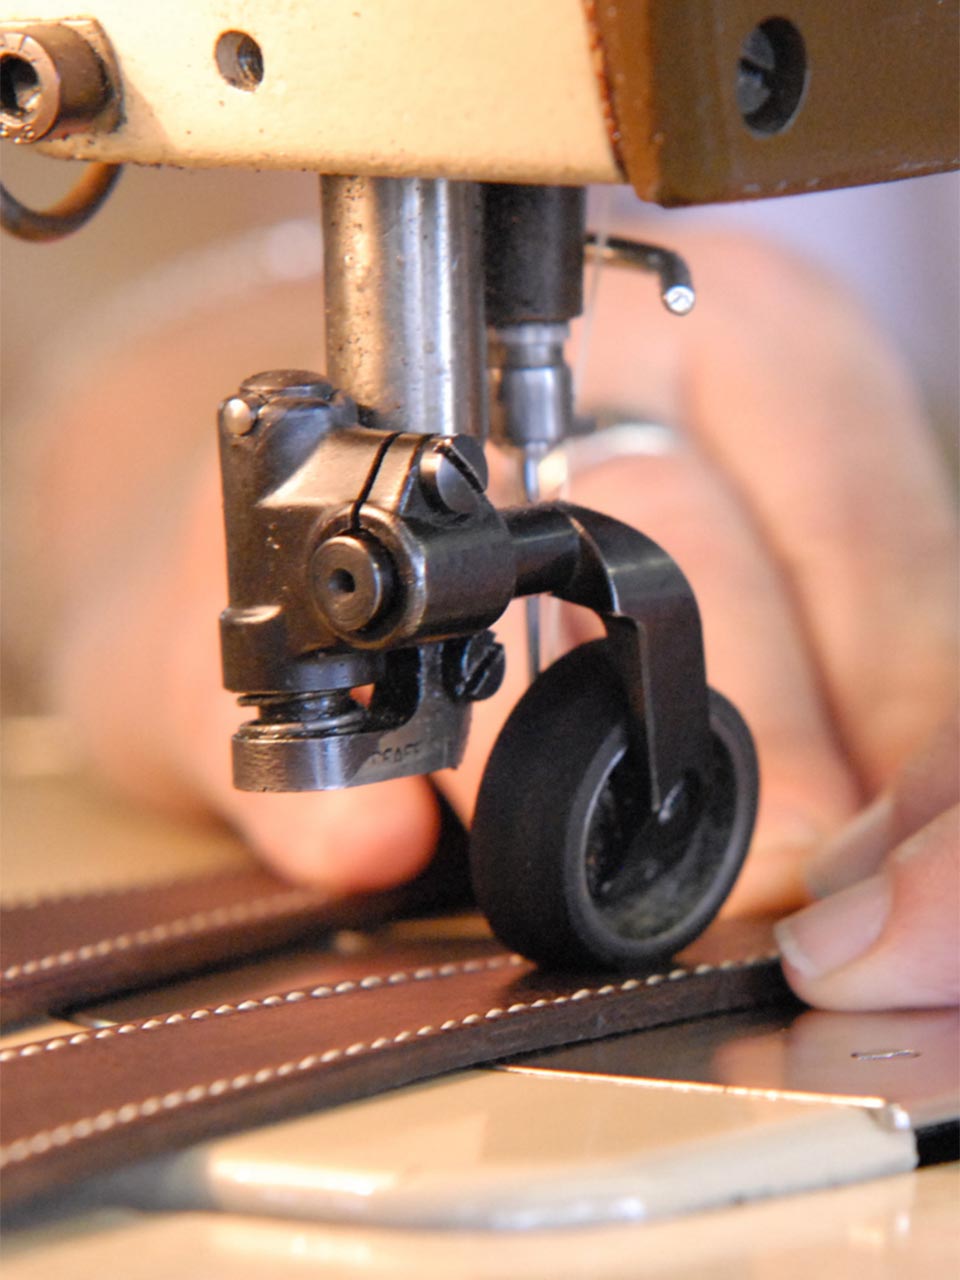 Atelier Bower spécialiste français ceinture cuir